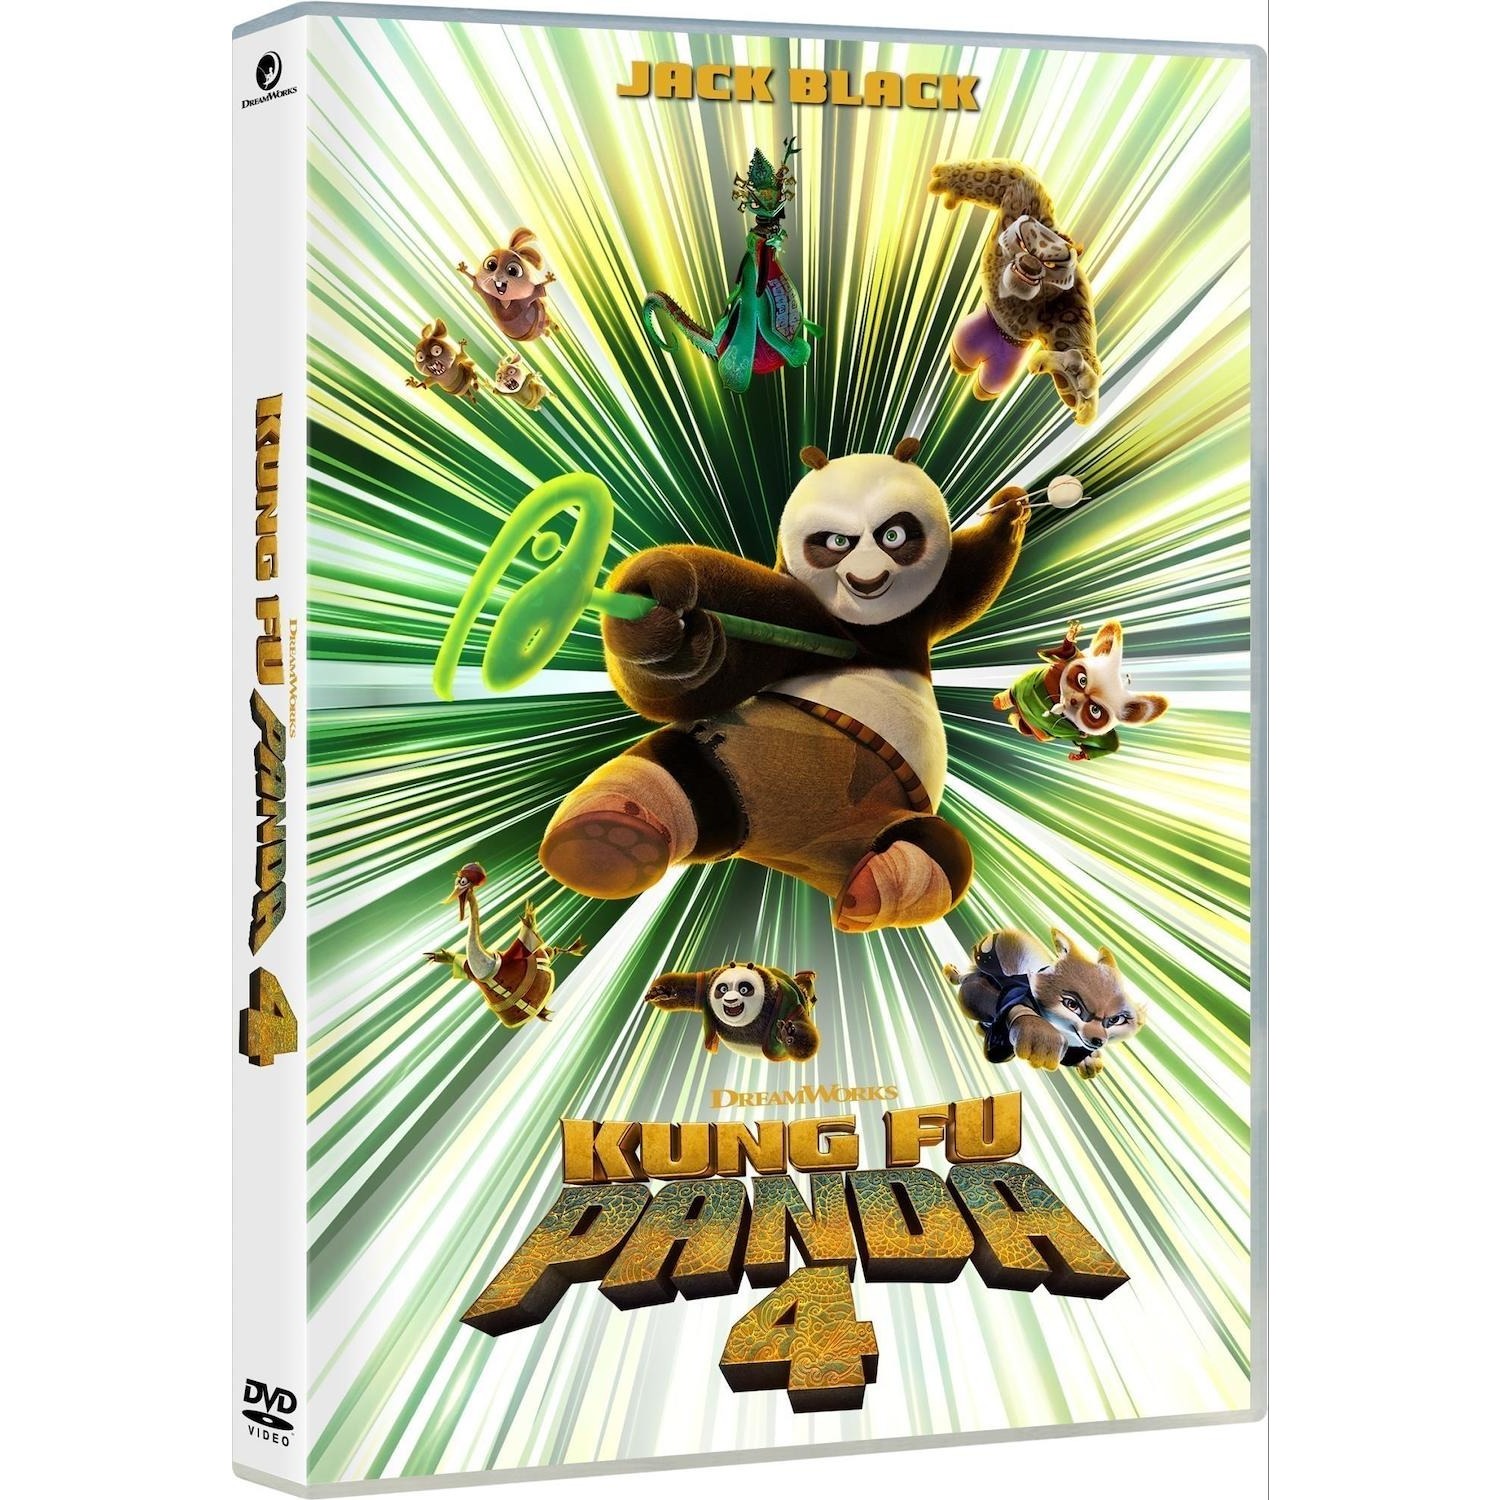 Immagine per DVD Kung Fu Panda 4 da DIMOStore